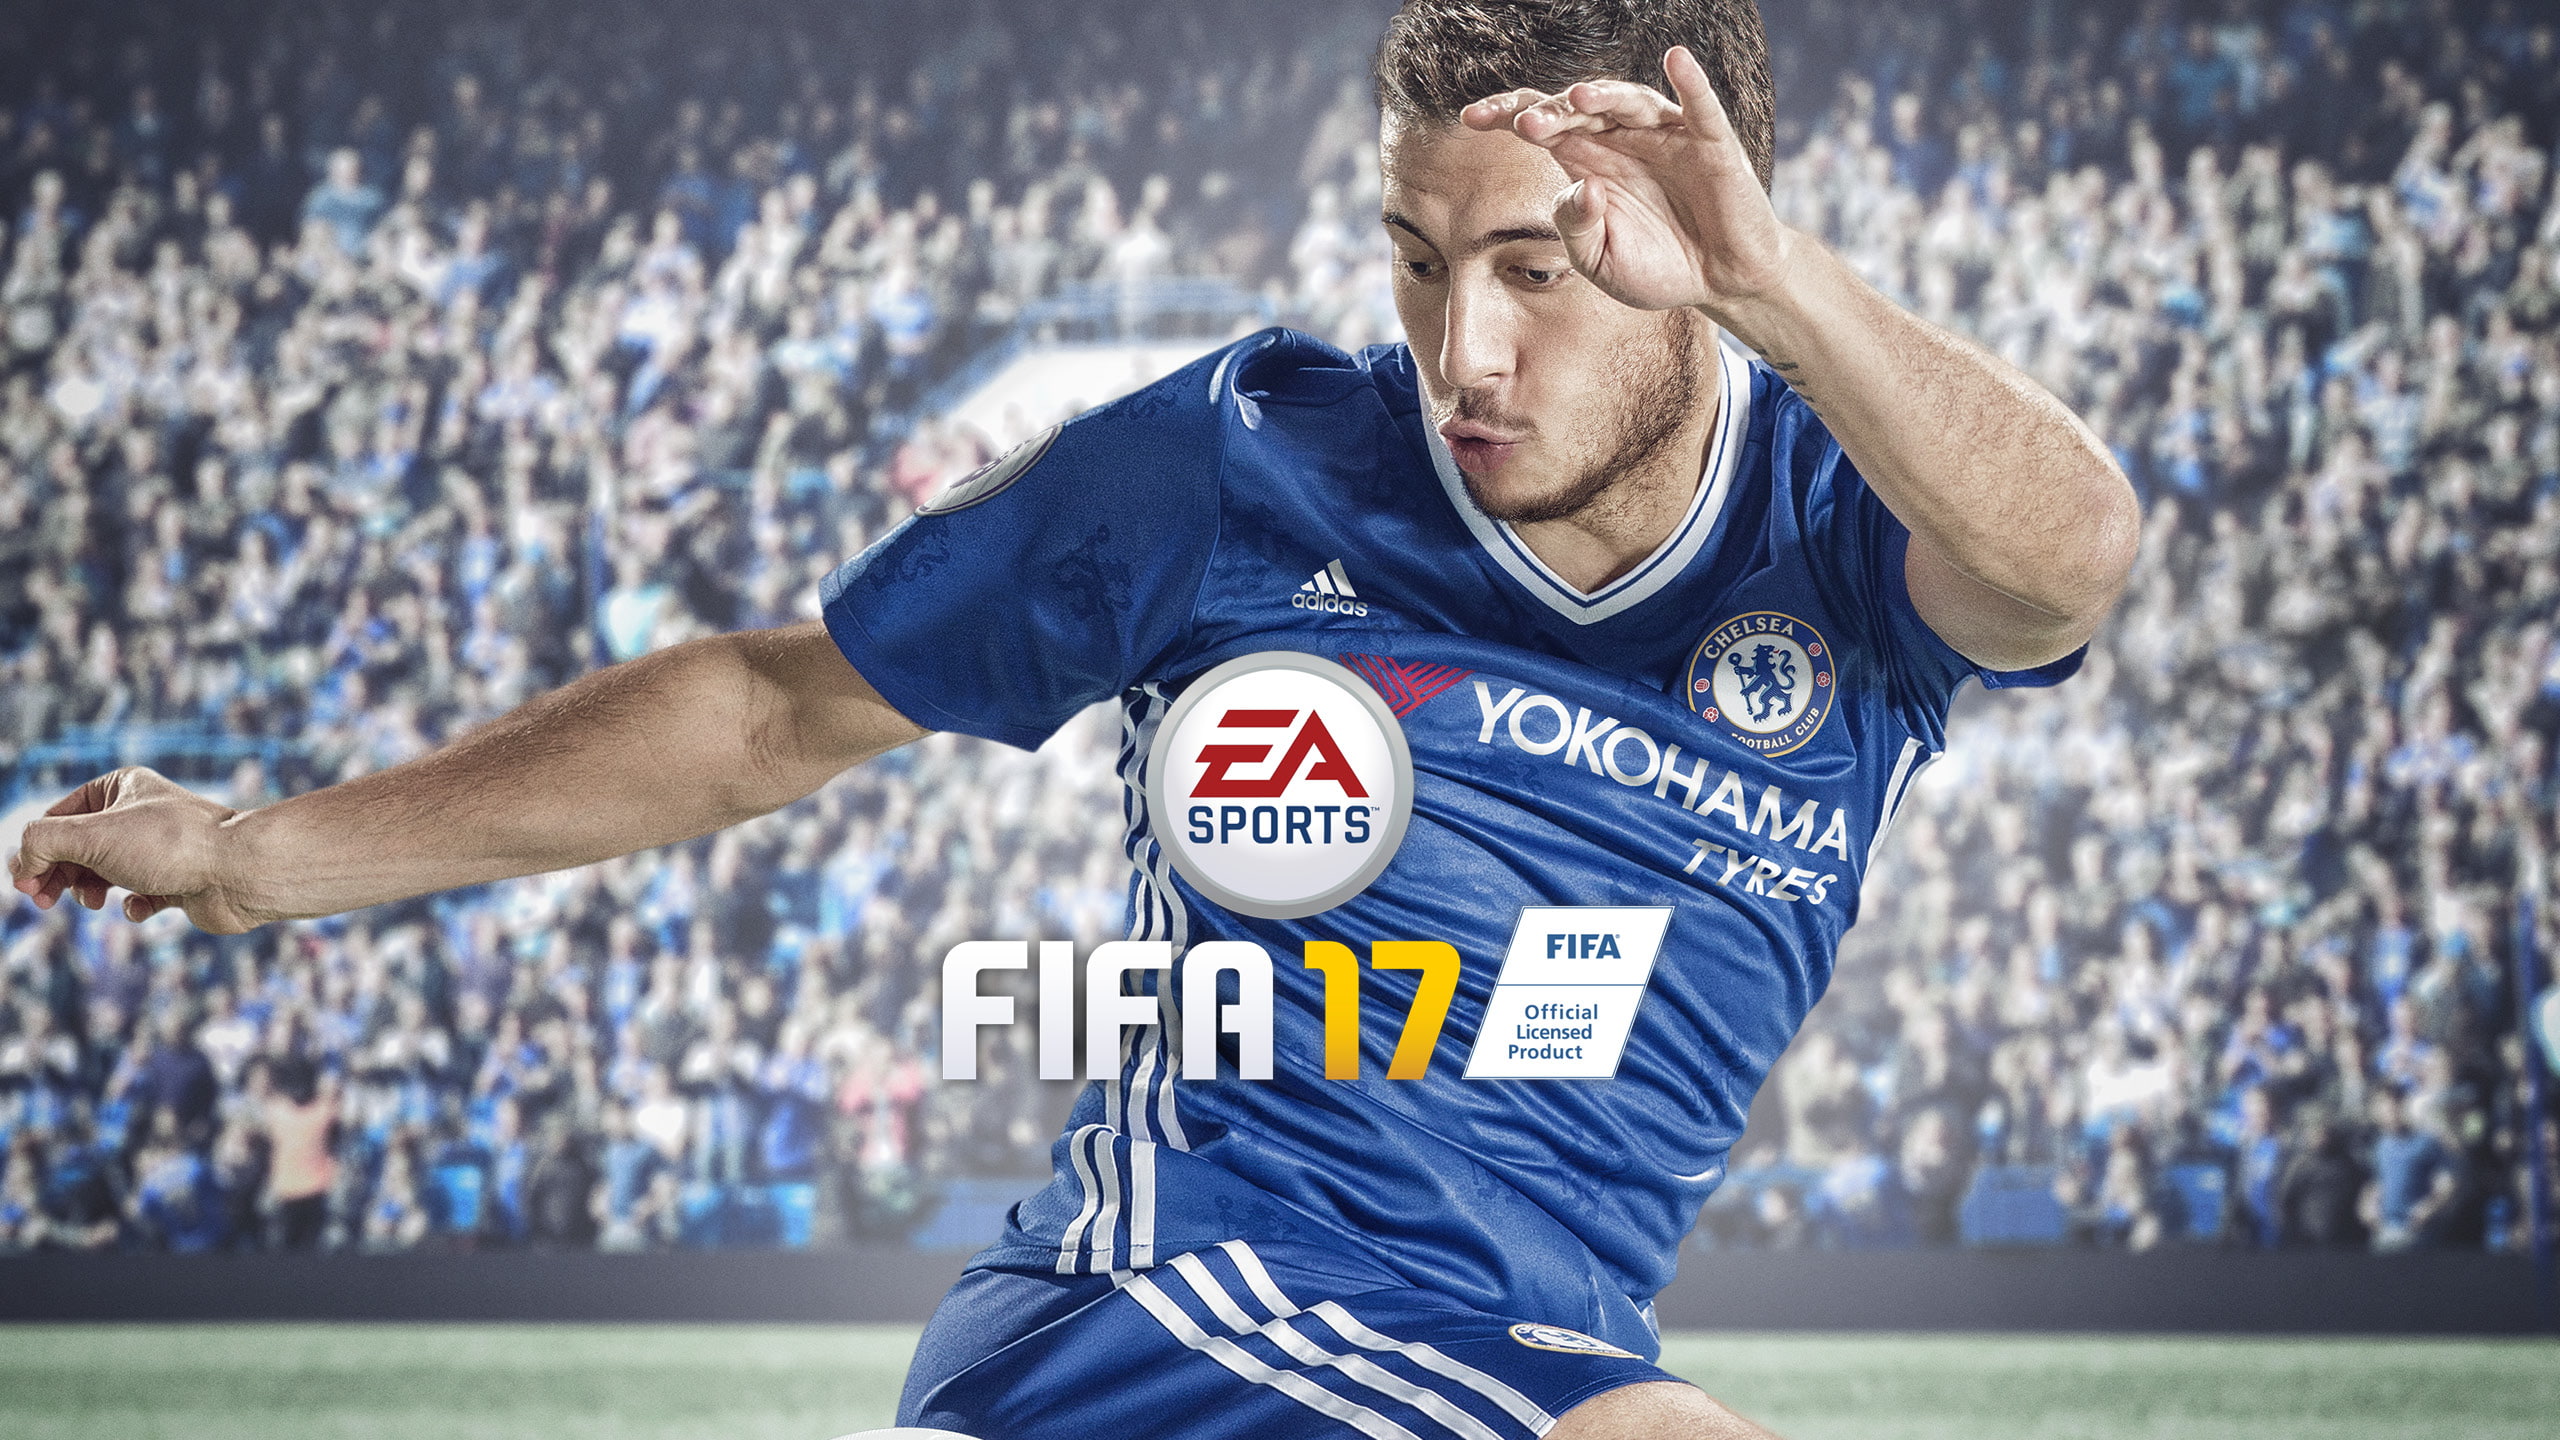 FIFA 17, EA Sports, Football game, Eden Hazard